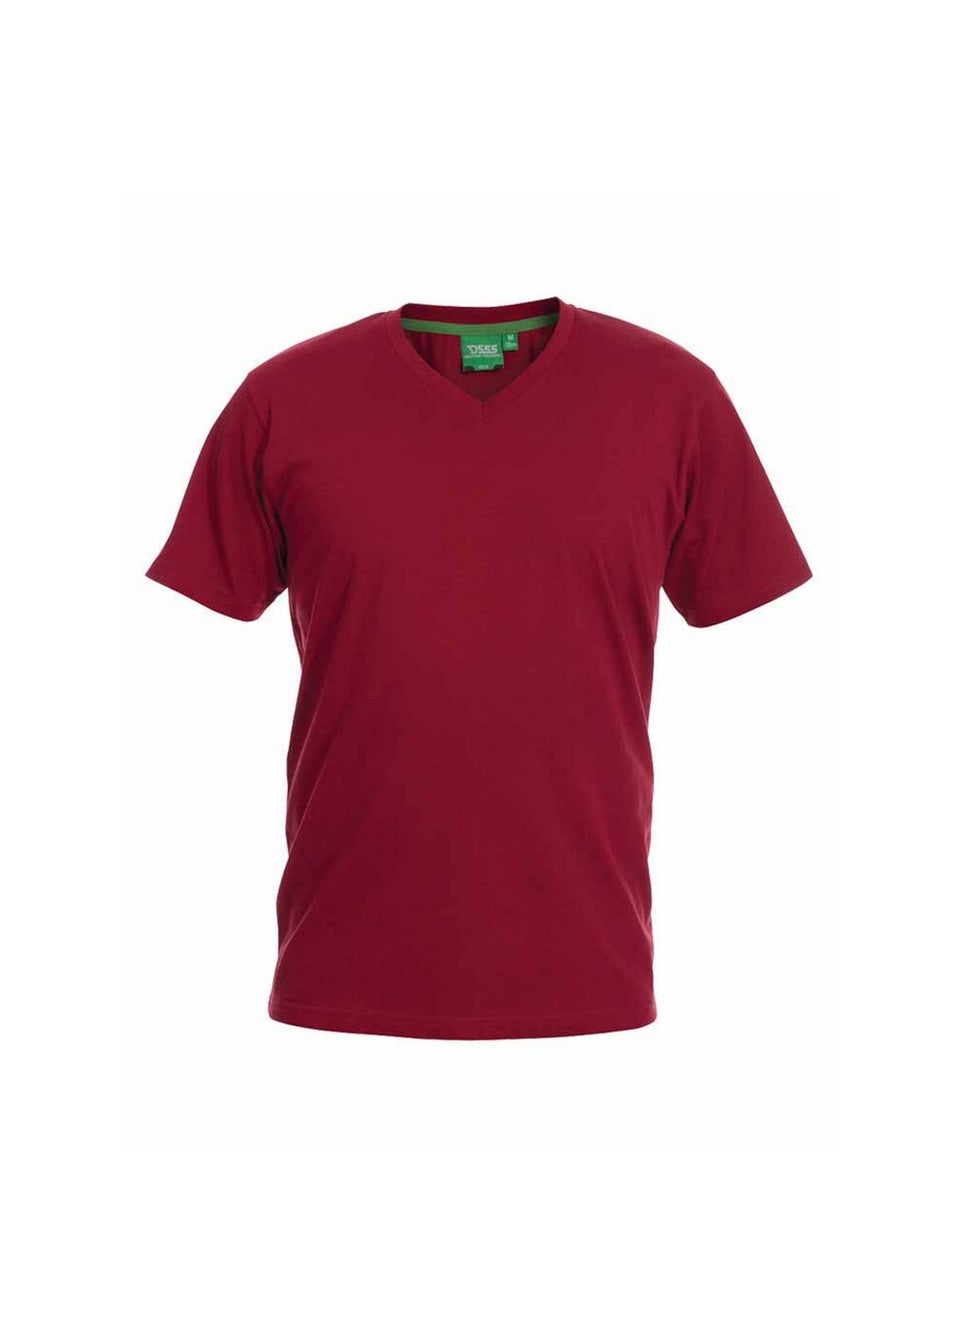 Duke Red Signature 2 King Size Cotton V Neck T-Shirt